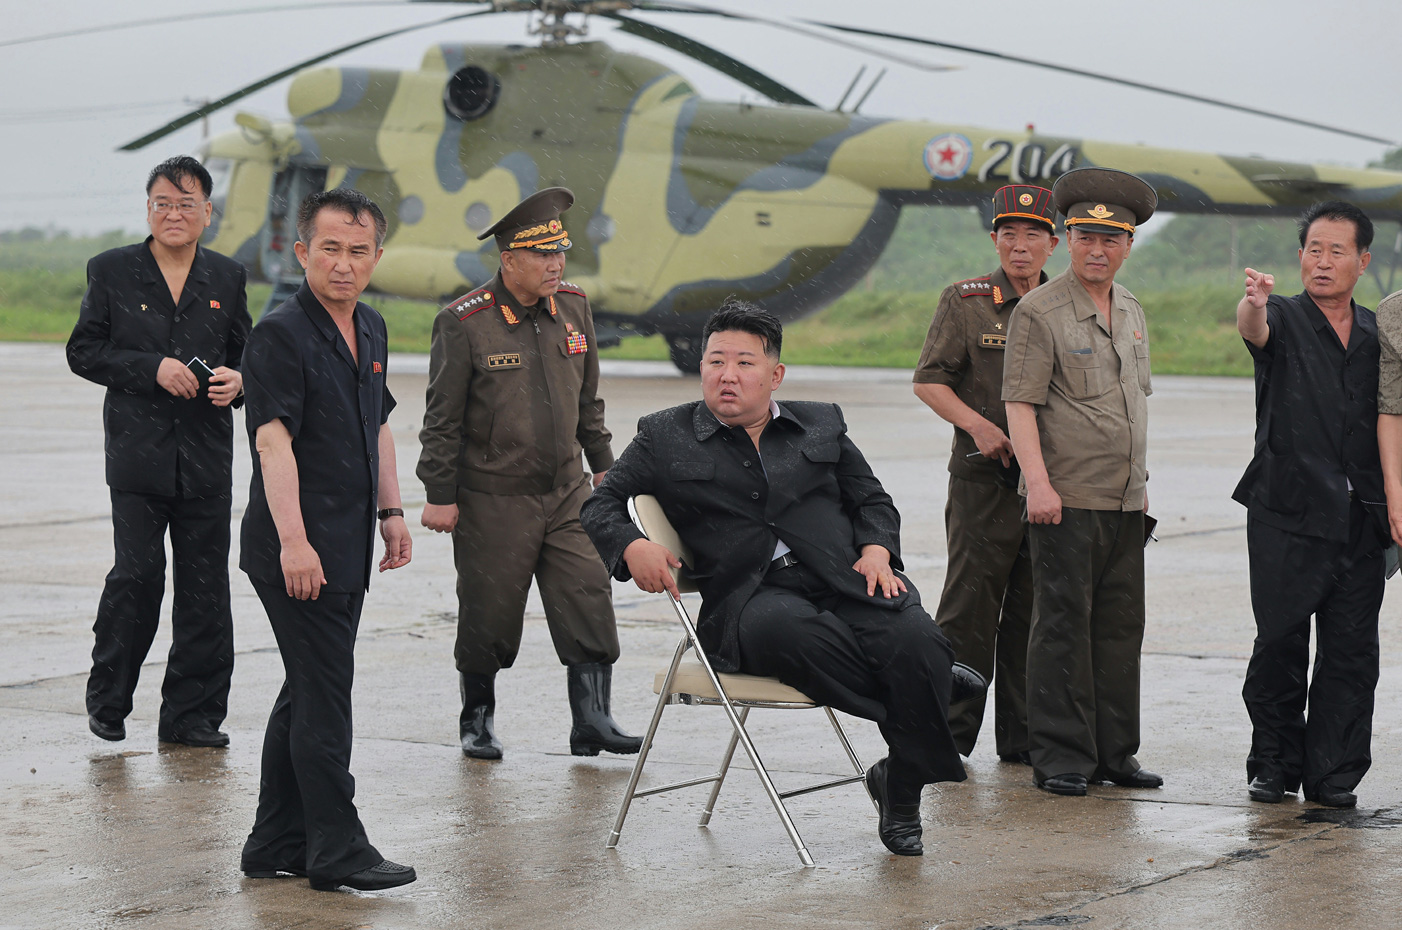 「死者１１００人以上」北朝鮮の救難ヘリが相次ぎ墜落、全員死亡も